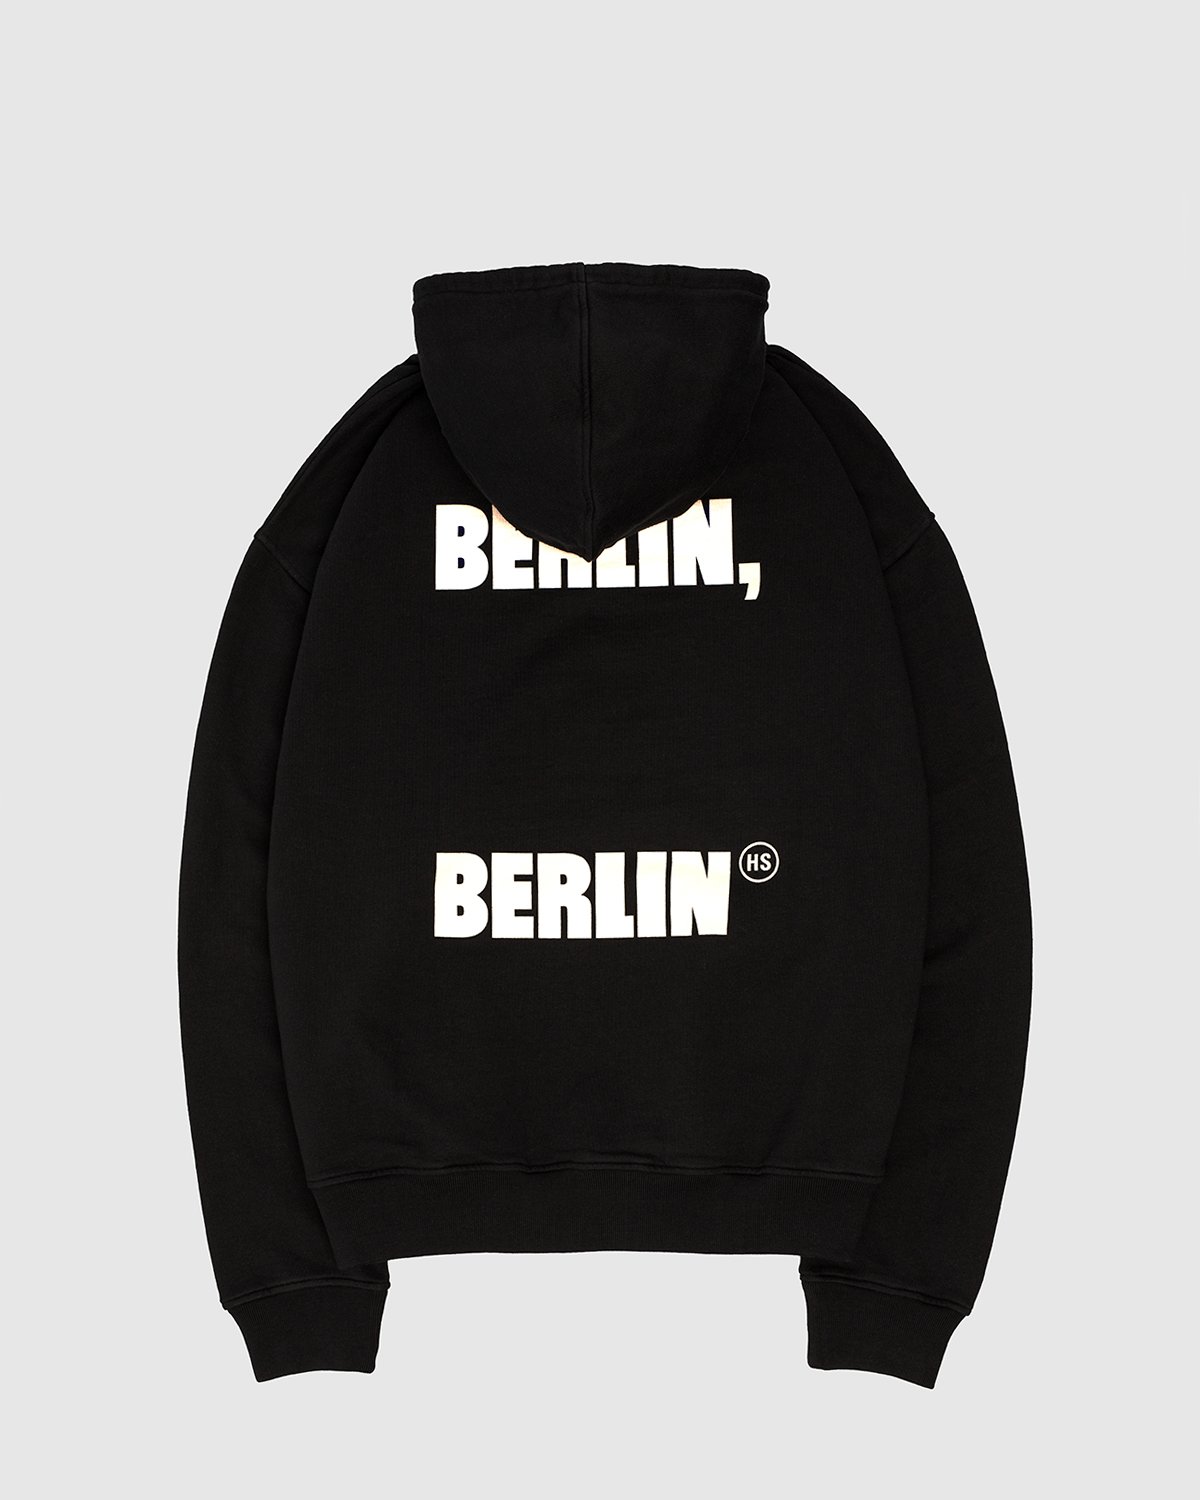 Highsnobiety - Berlin, Berlin Hoodie Black - Clothing - Black - Image 1